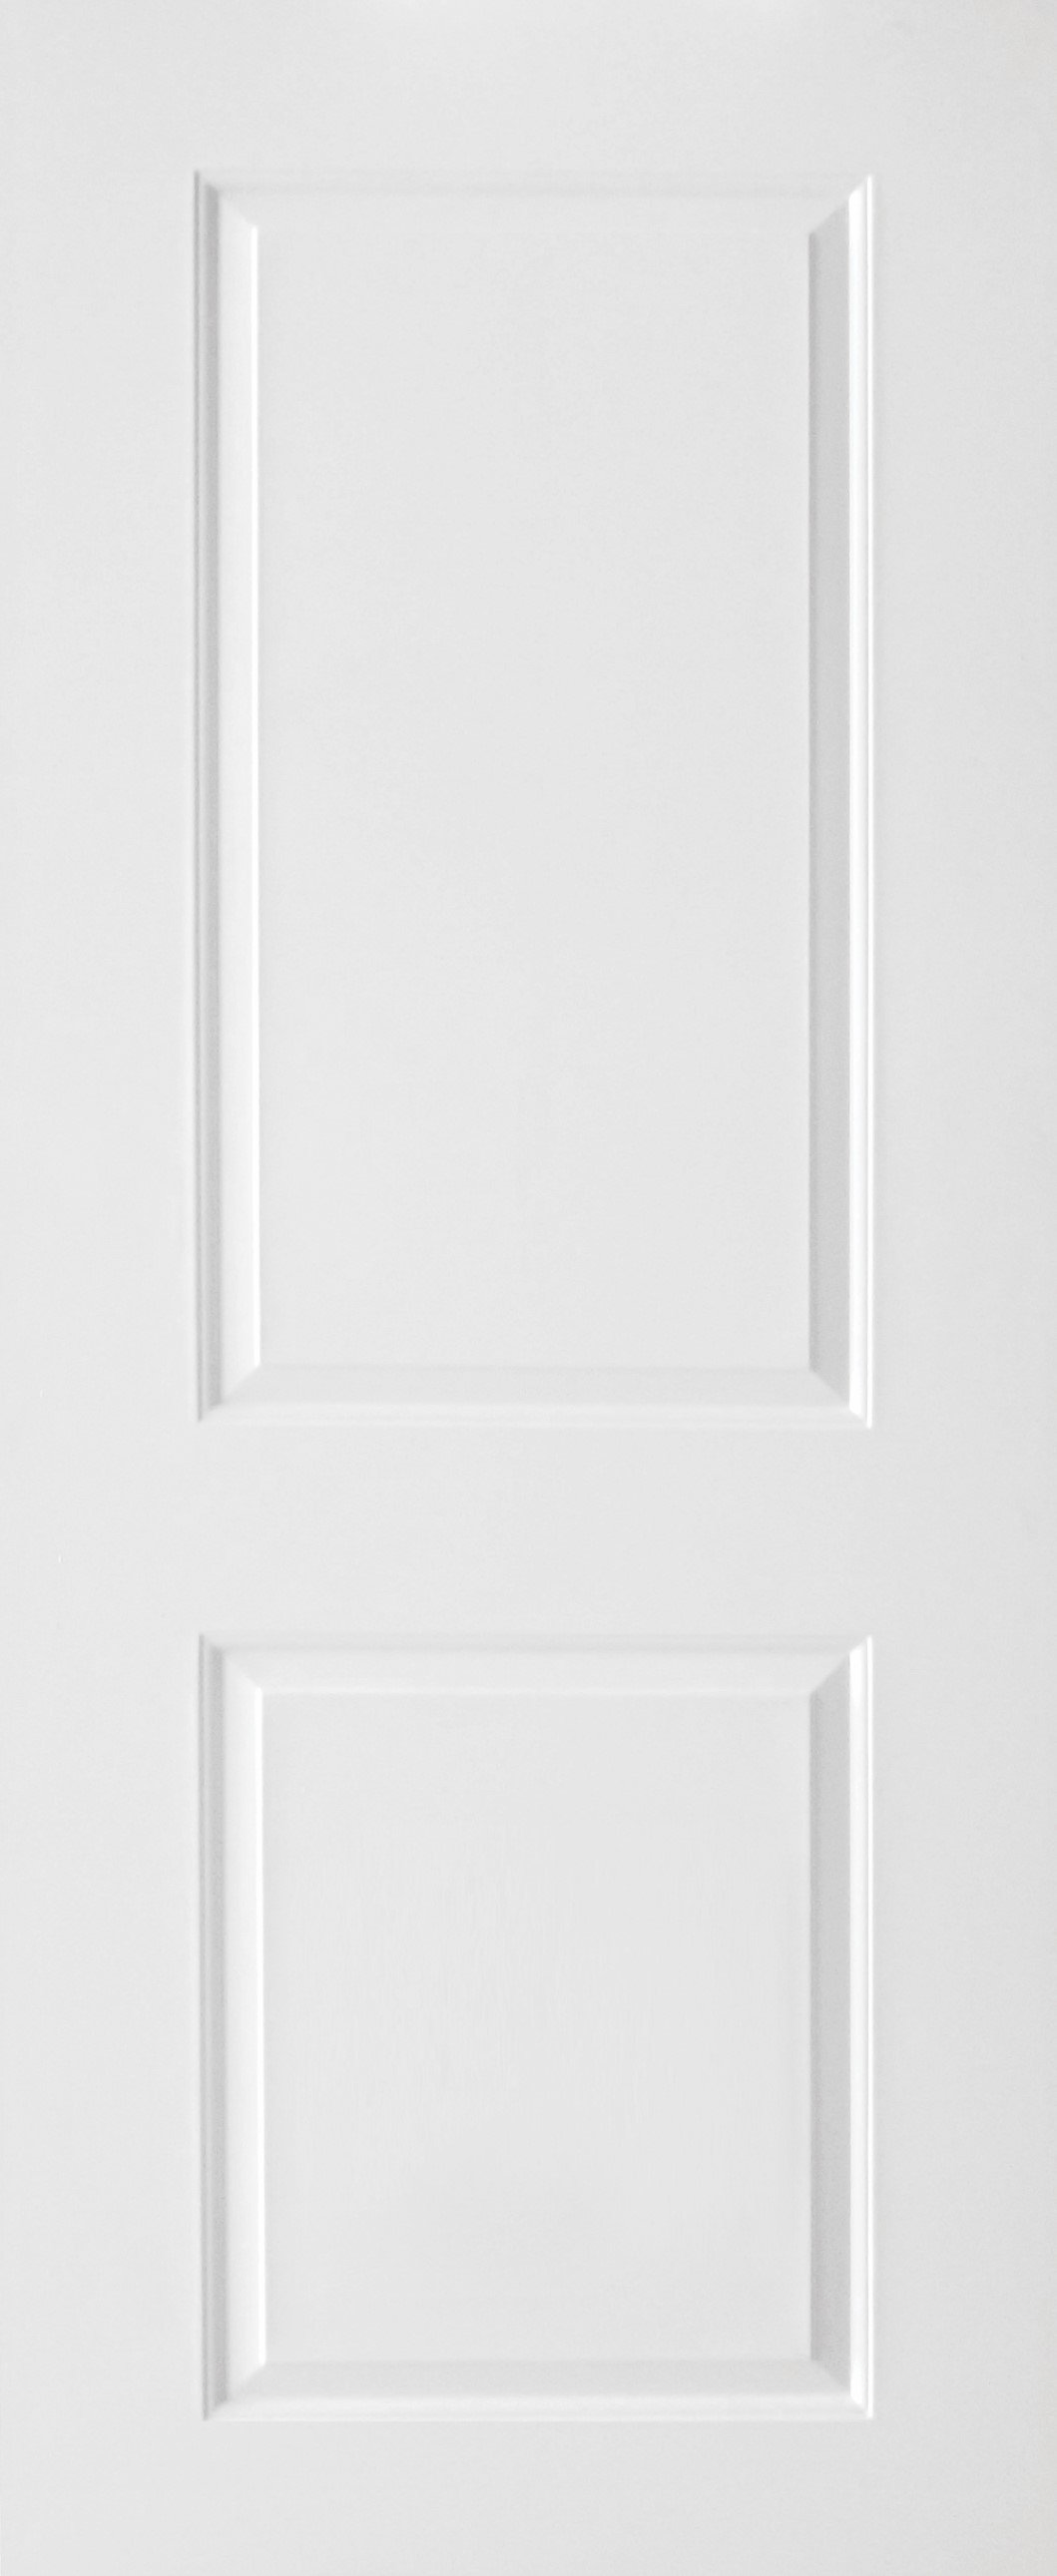 ประตู uPVC รุ่นภายนอก EXTERA สีขาว ลายไม้ บานลูกฟัก 2 ช่องตรง